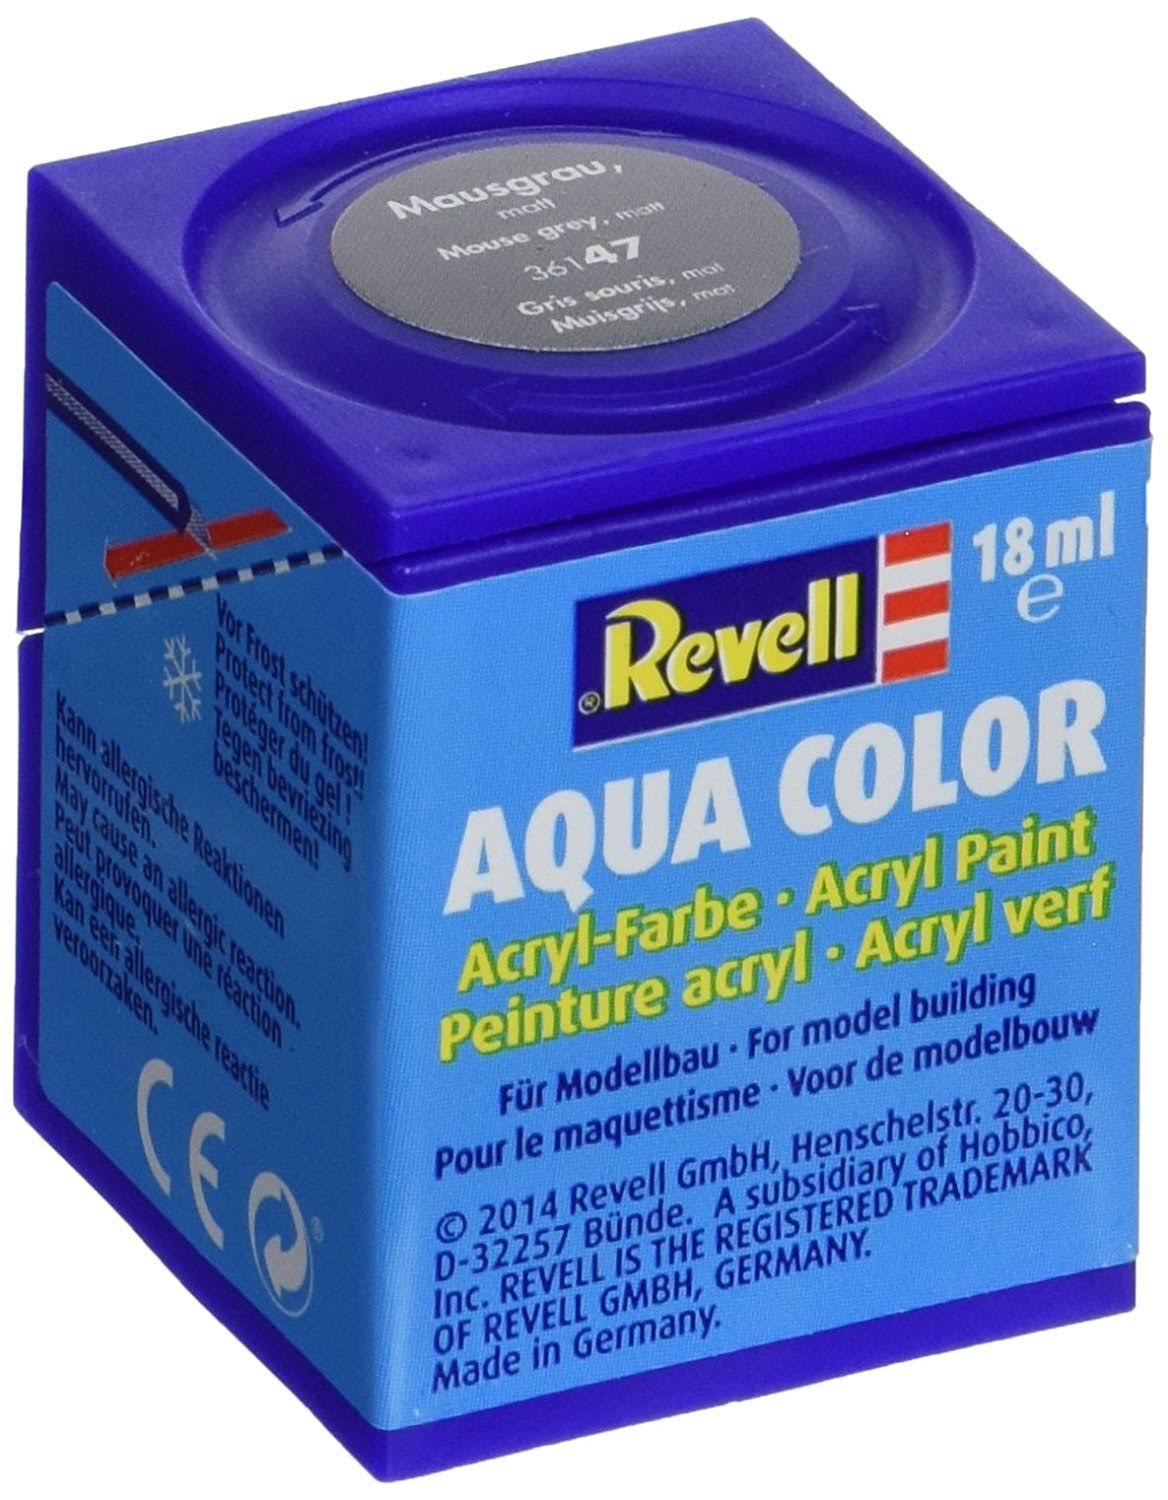 Revell Aqua Color Acrylic Paint. No. 47 Mouse Grey Matt